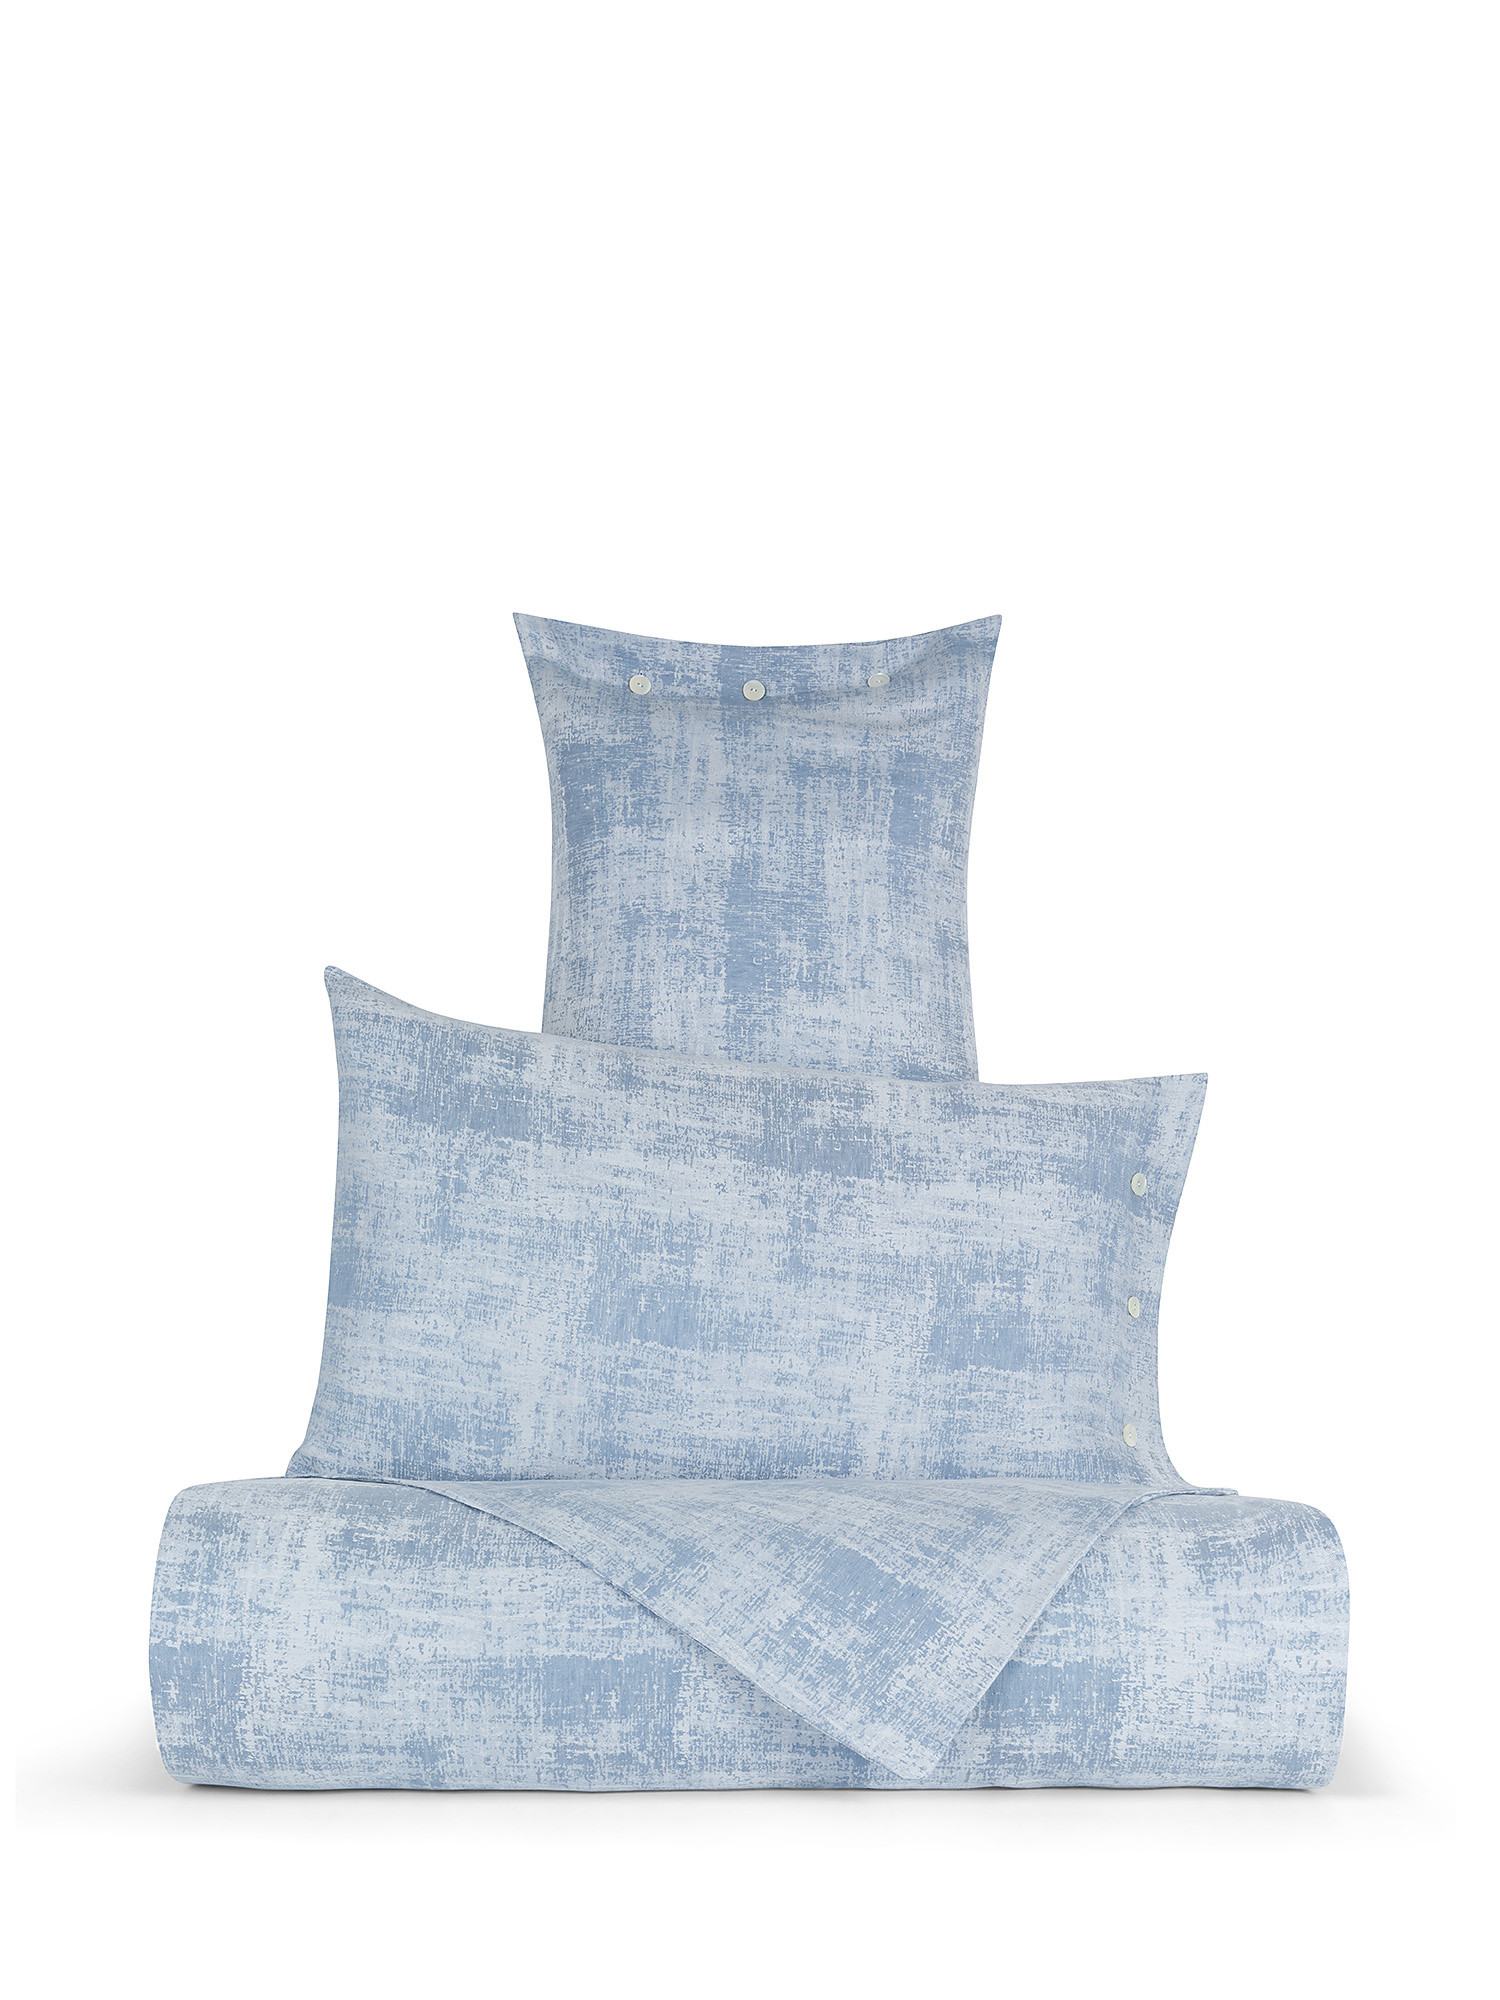 Denim effect washed linen blend duvet cover, Light Blue, large image number 0